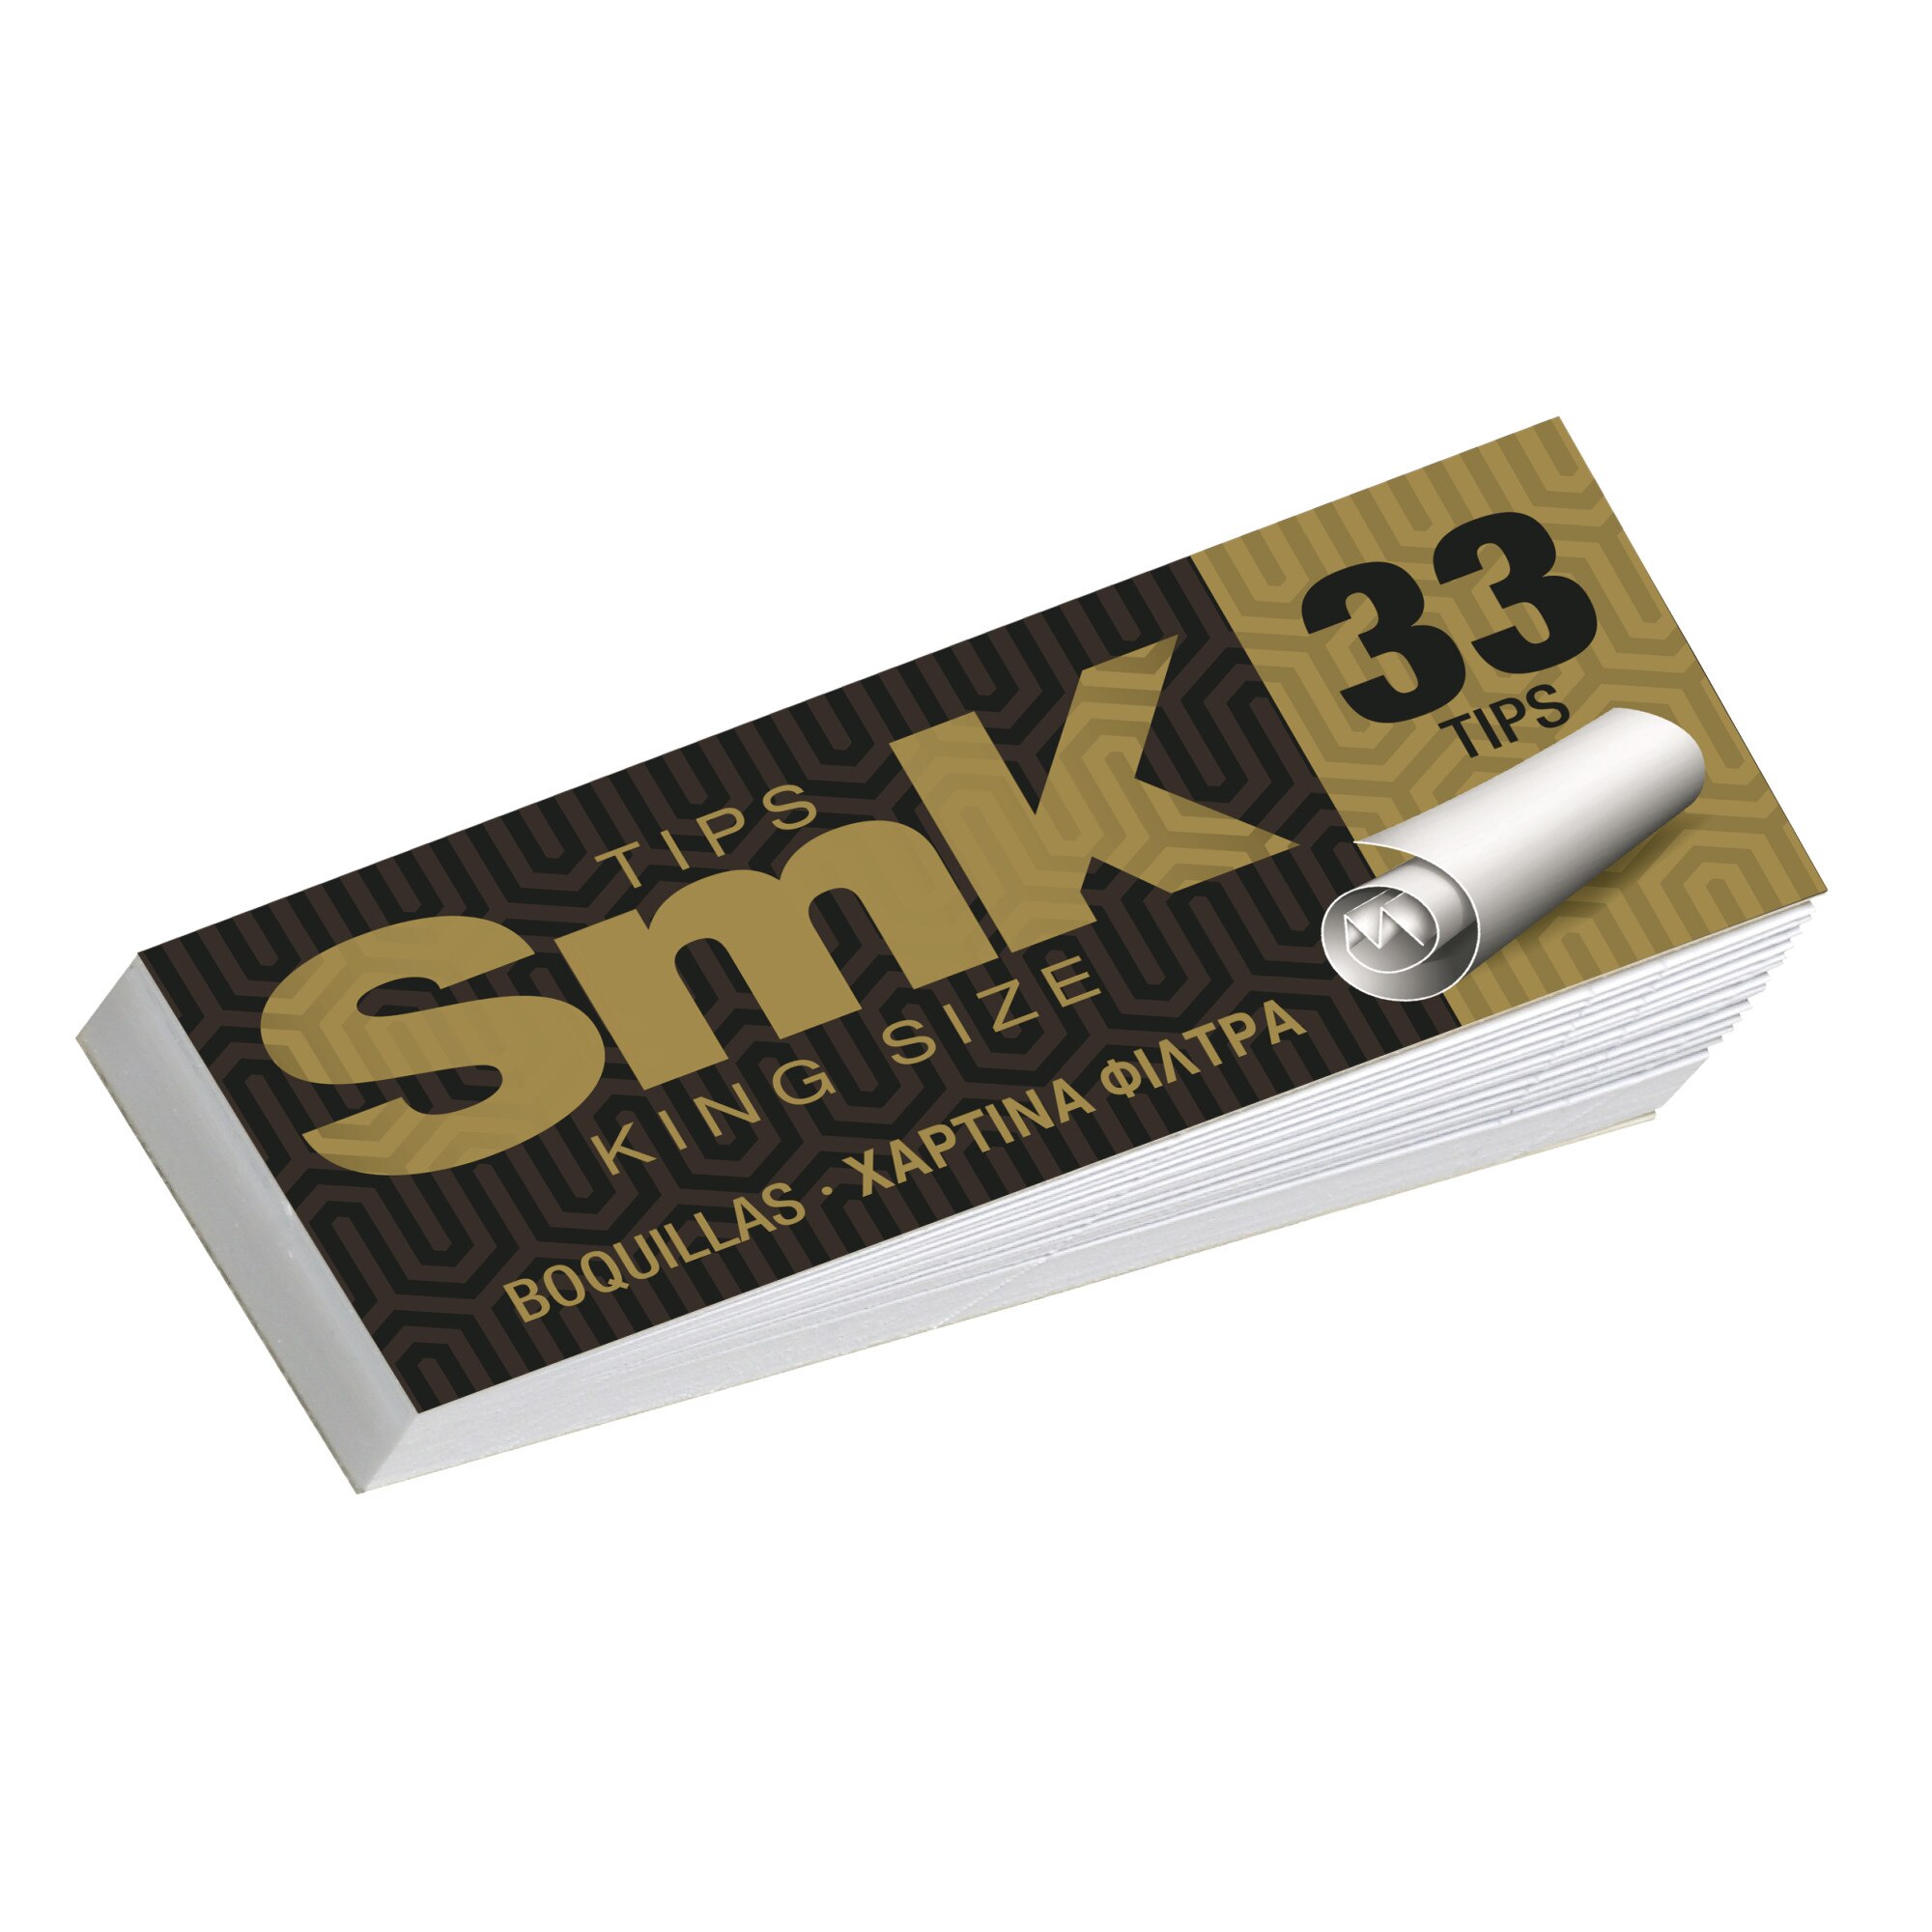 Set Filtre de Carton SMK Tips 33 King Size, 50 Bucati - eMAG.ro